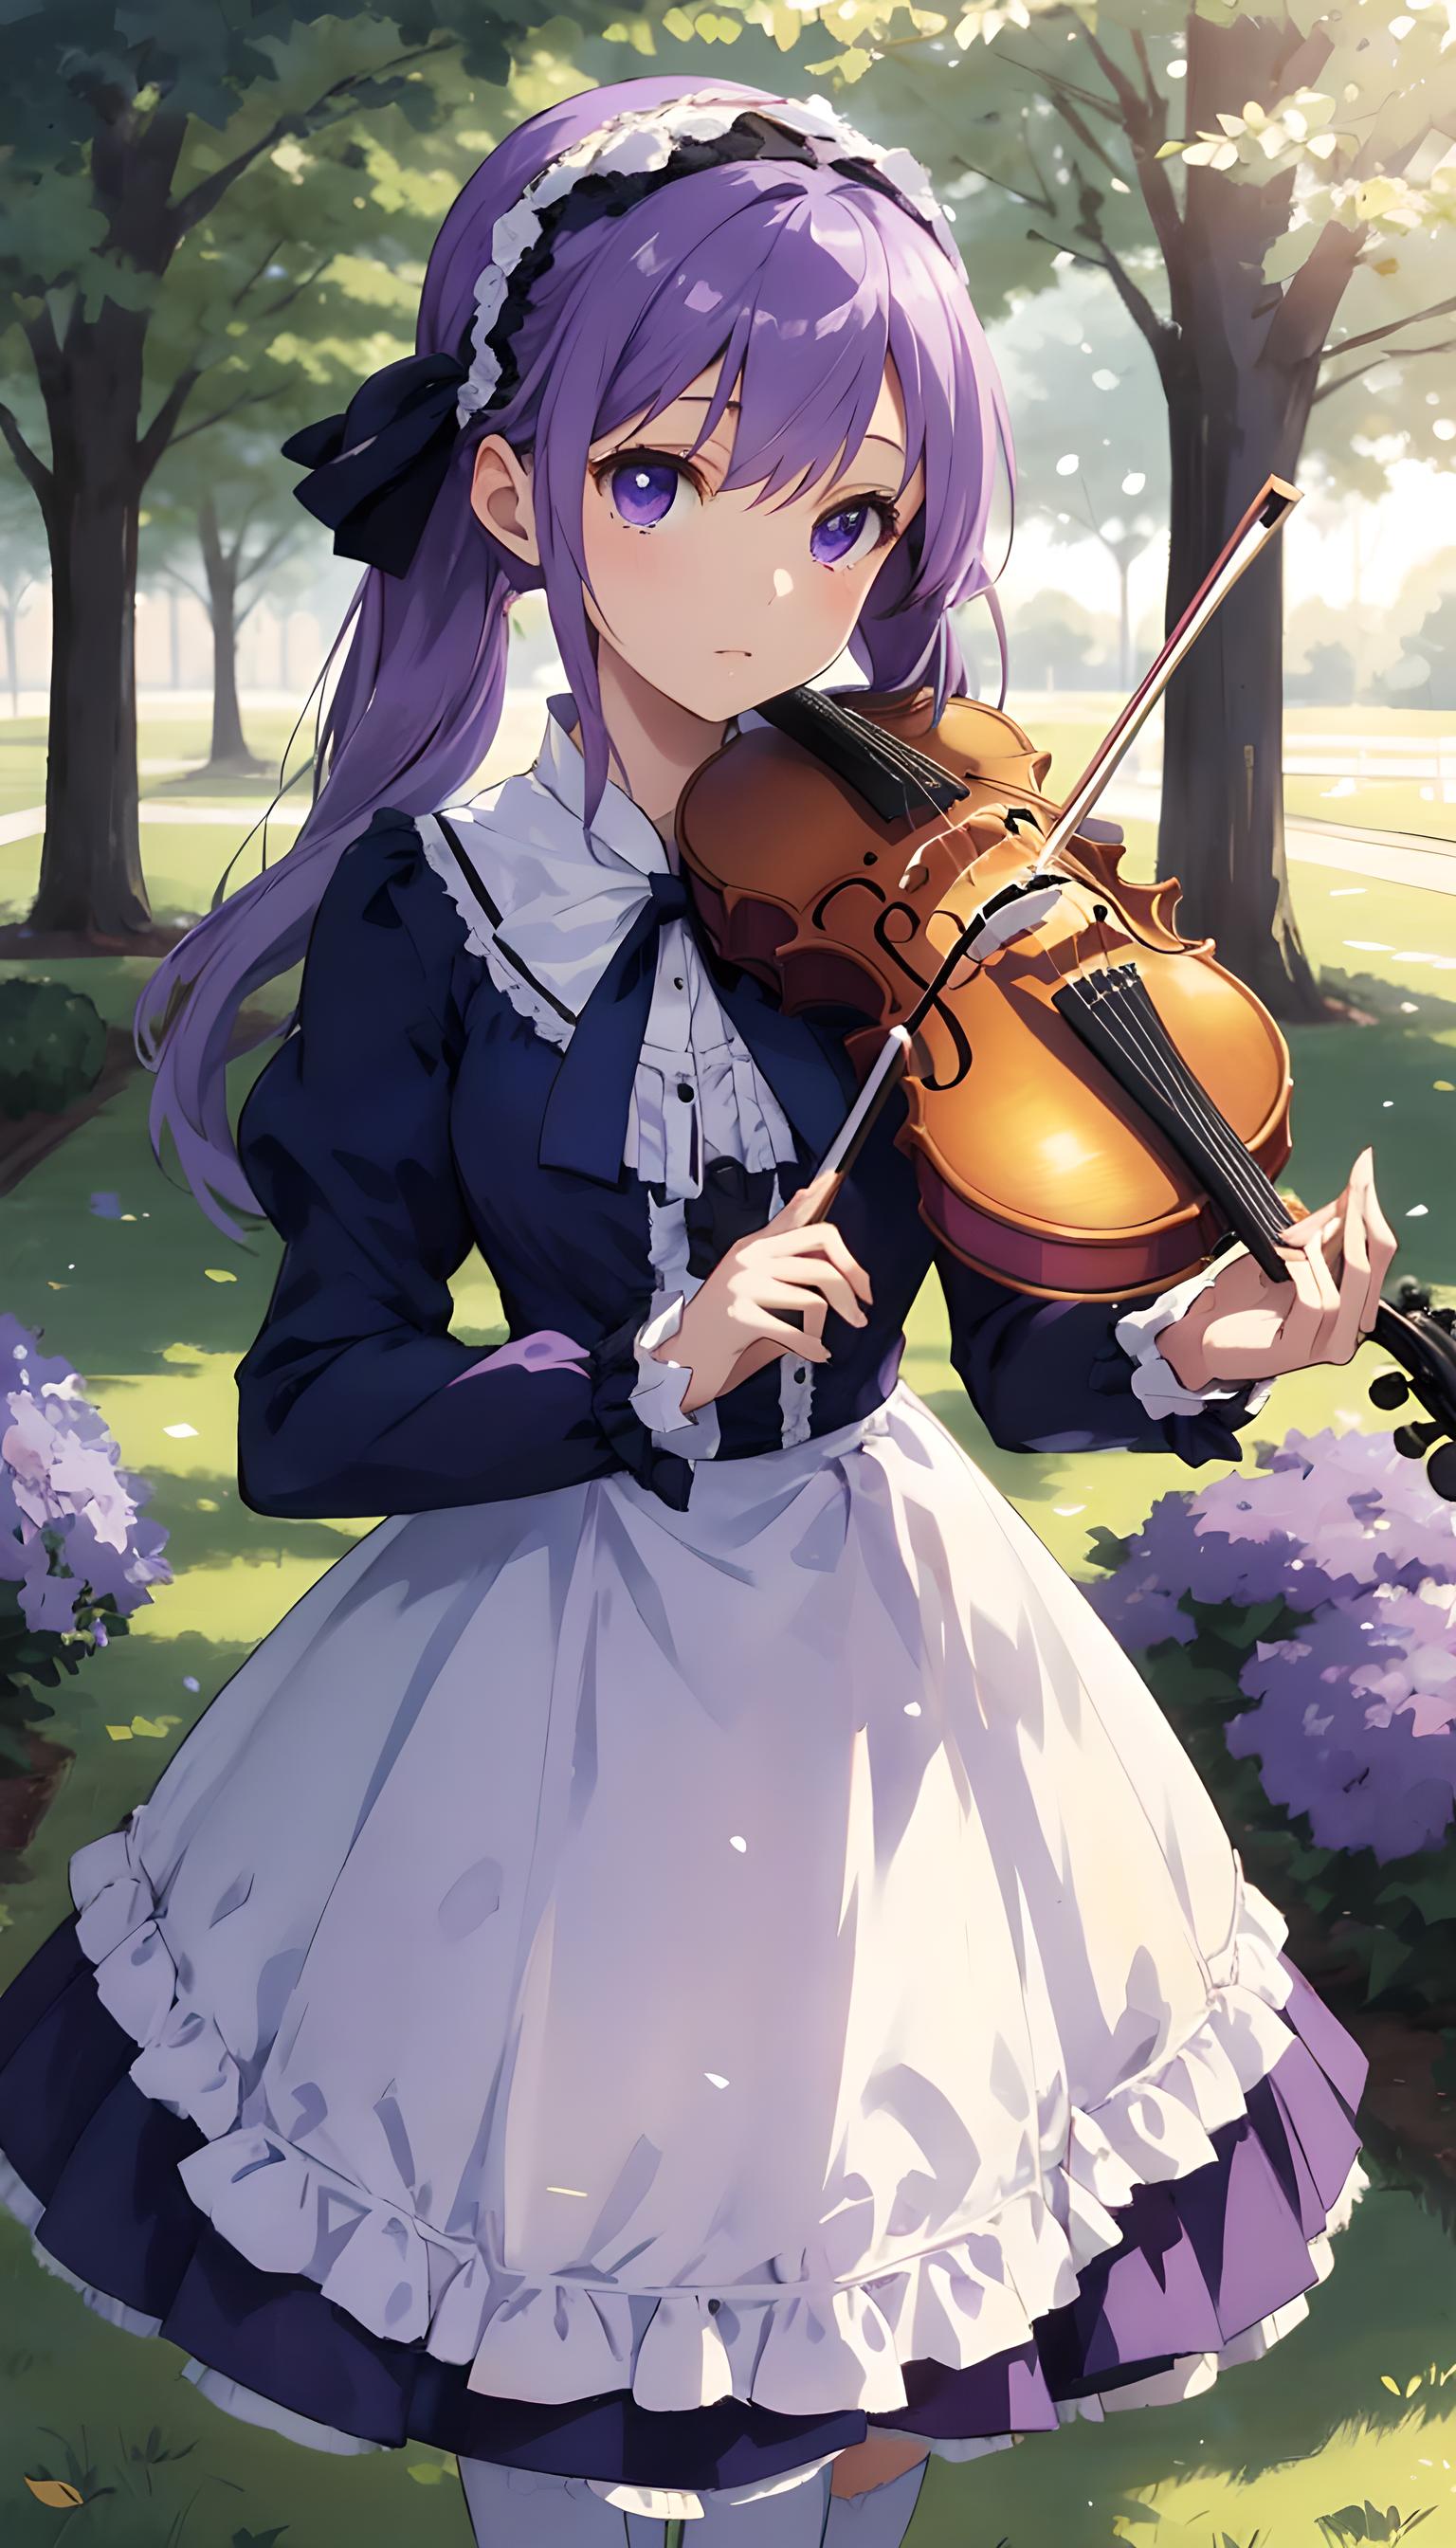 小提琴少女